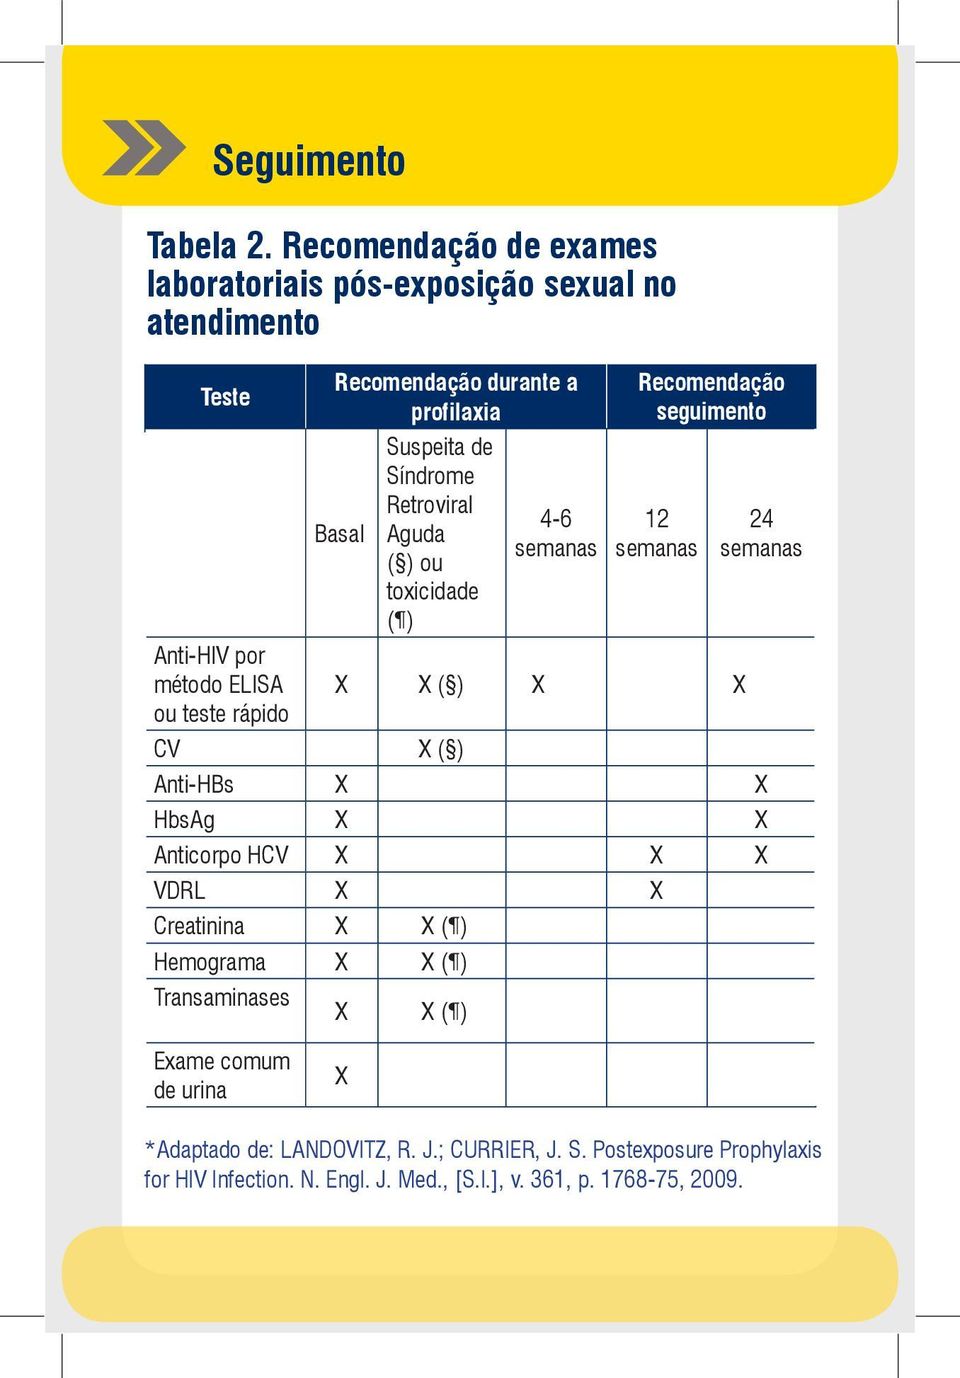 Retroviral Aguda ( ) ou toxicidade ( ) 4-6 semanas Recomendação seguimento 12 semanas 24 semanas Anti-HIV por método ELISA X X ( ) X X ou teste